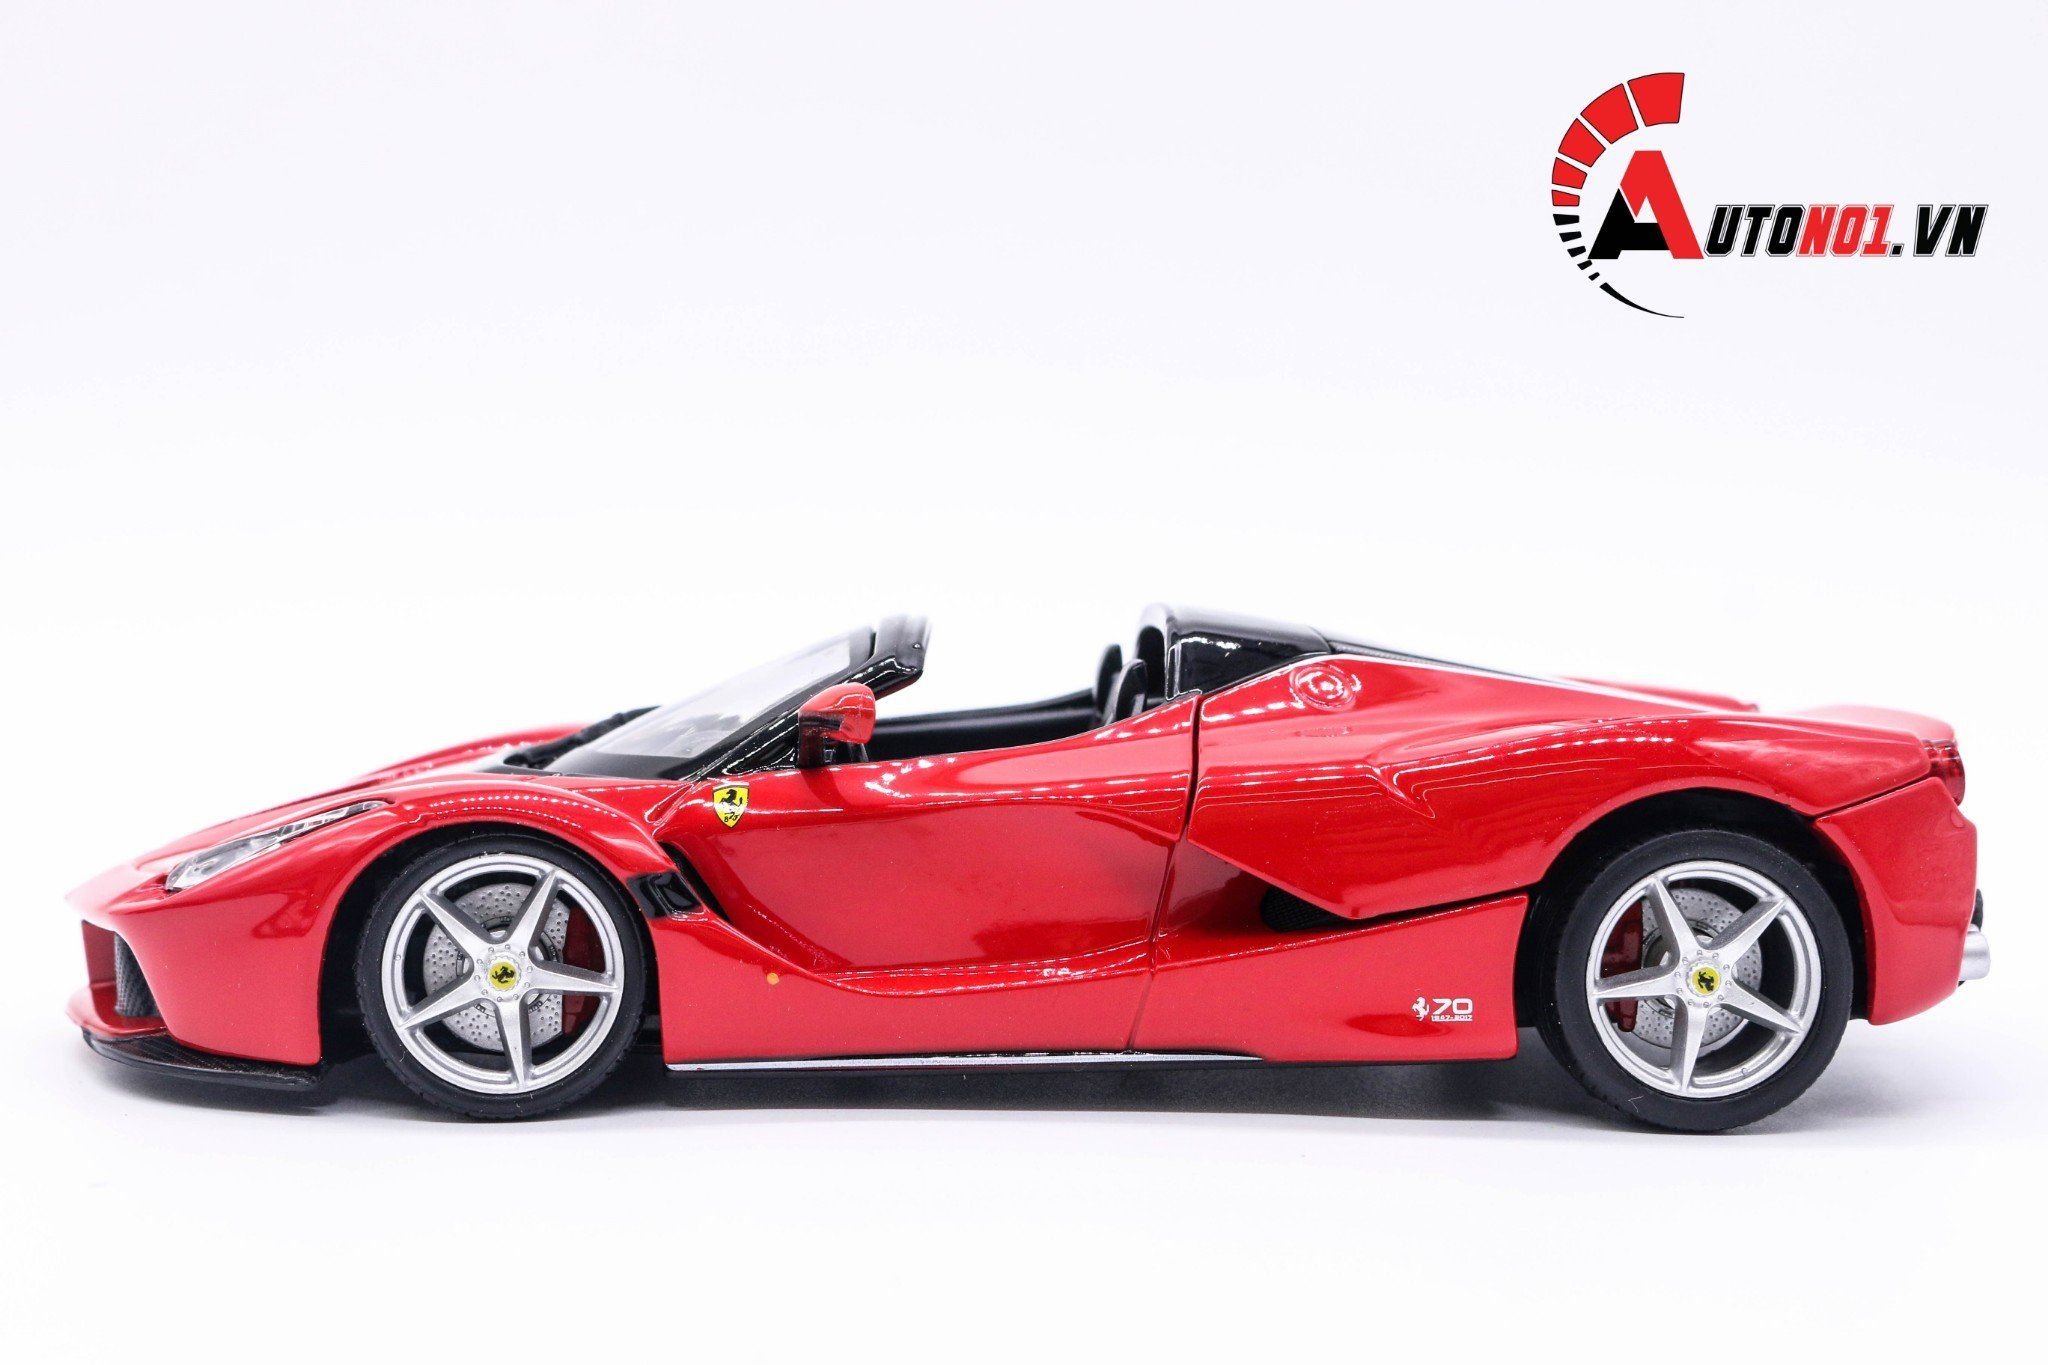  Mô hình xe Ferrari Laferrari Aperta Red 1:24 Bburago 4885 